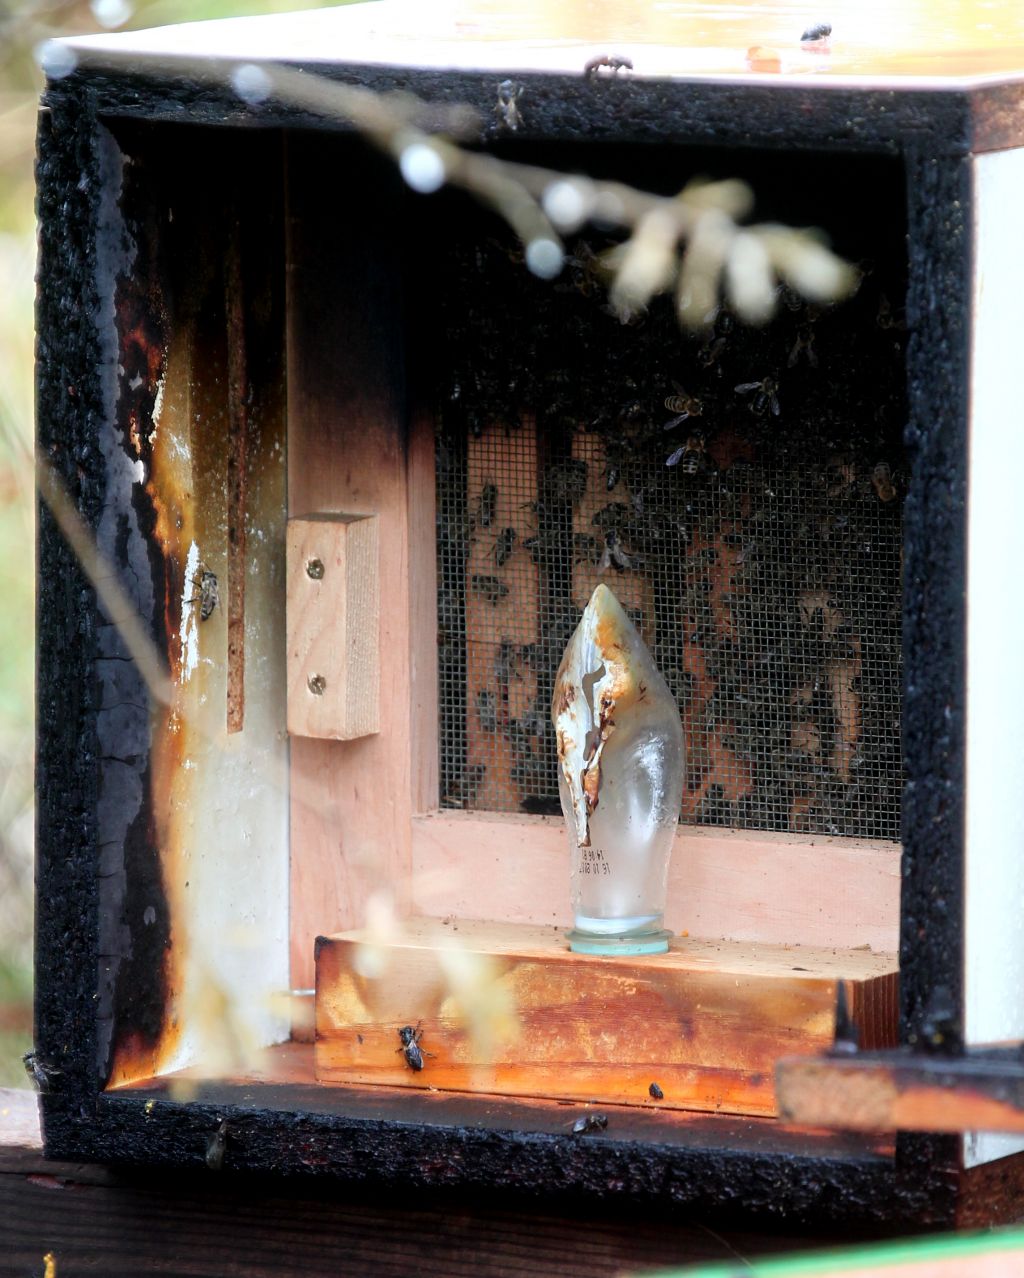 Čebelnjak zažgal požigalec ali čebelar?